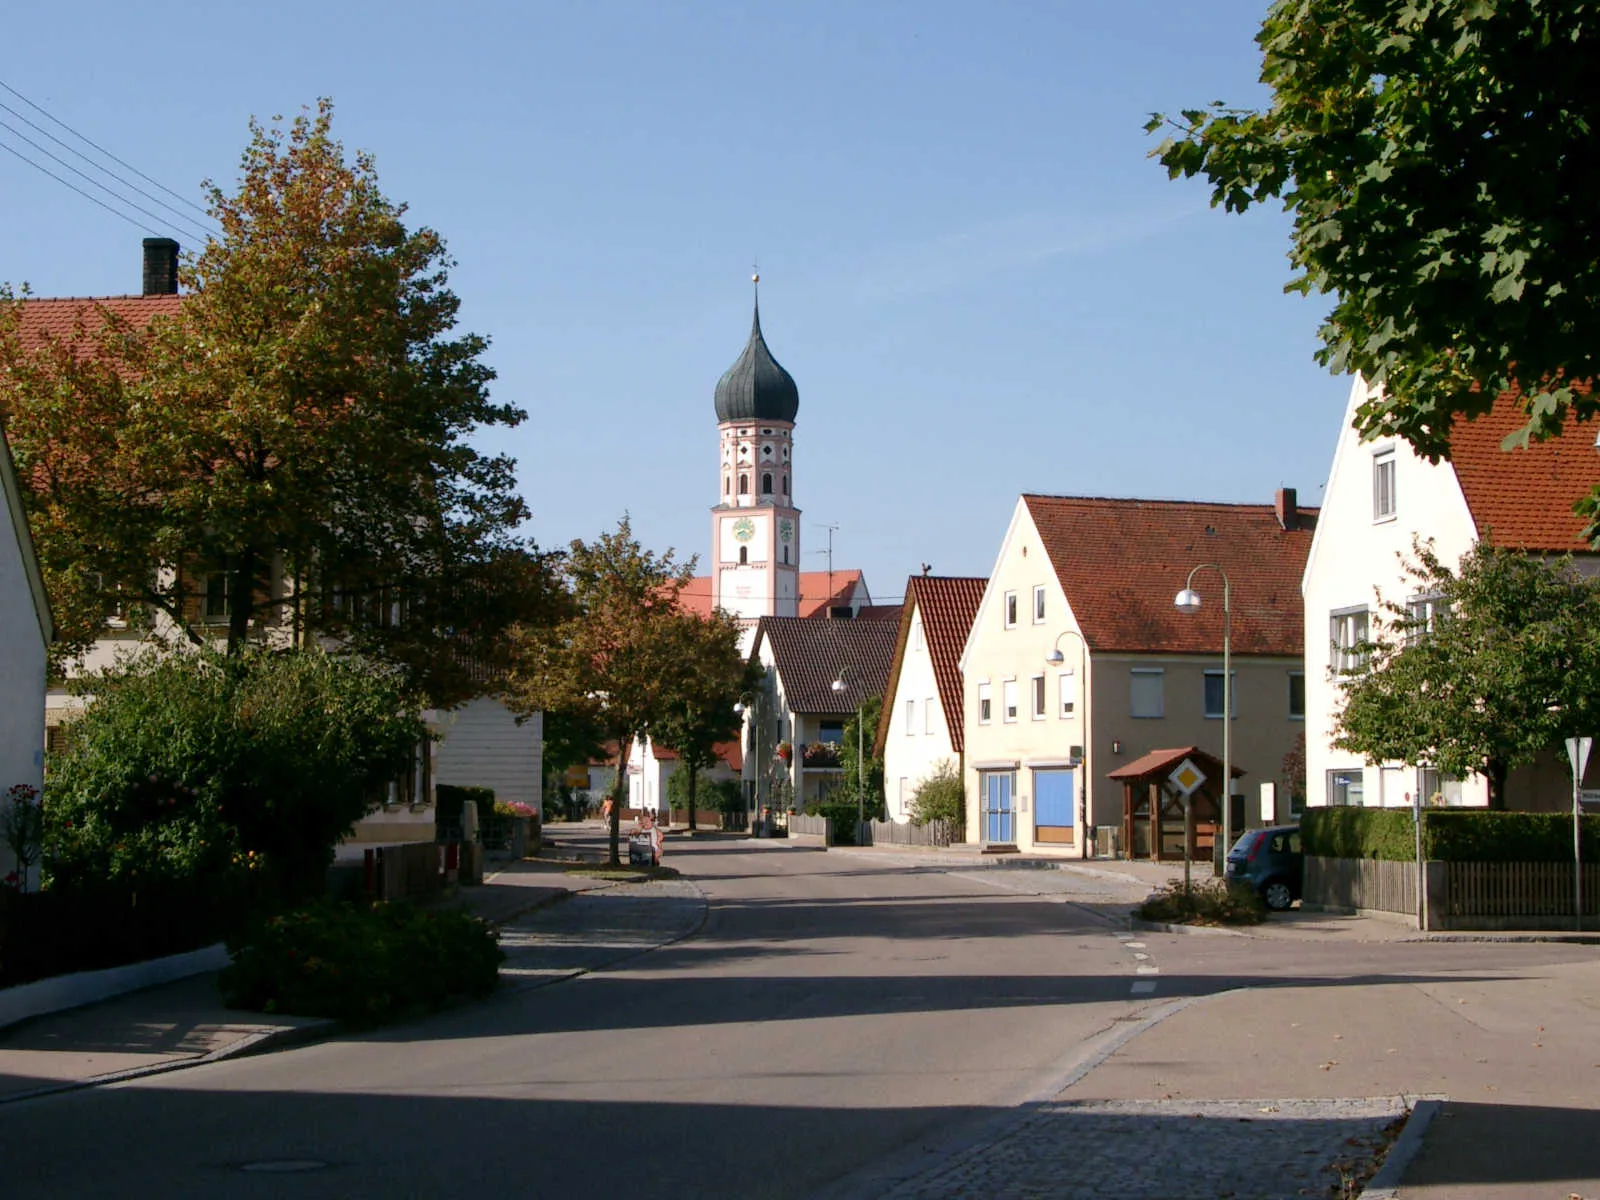 Image of Mertingen